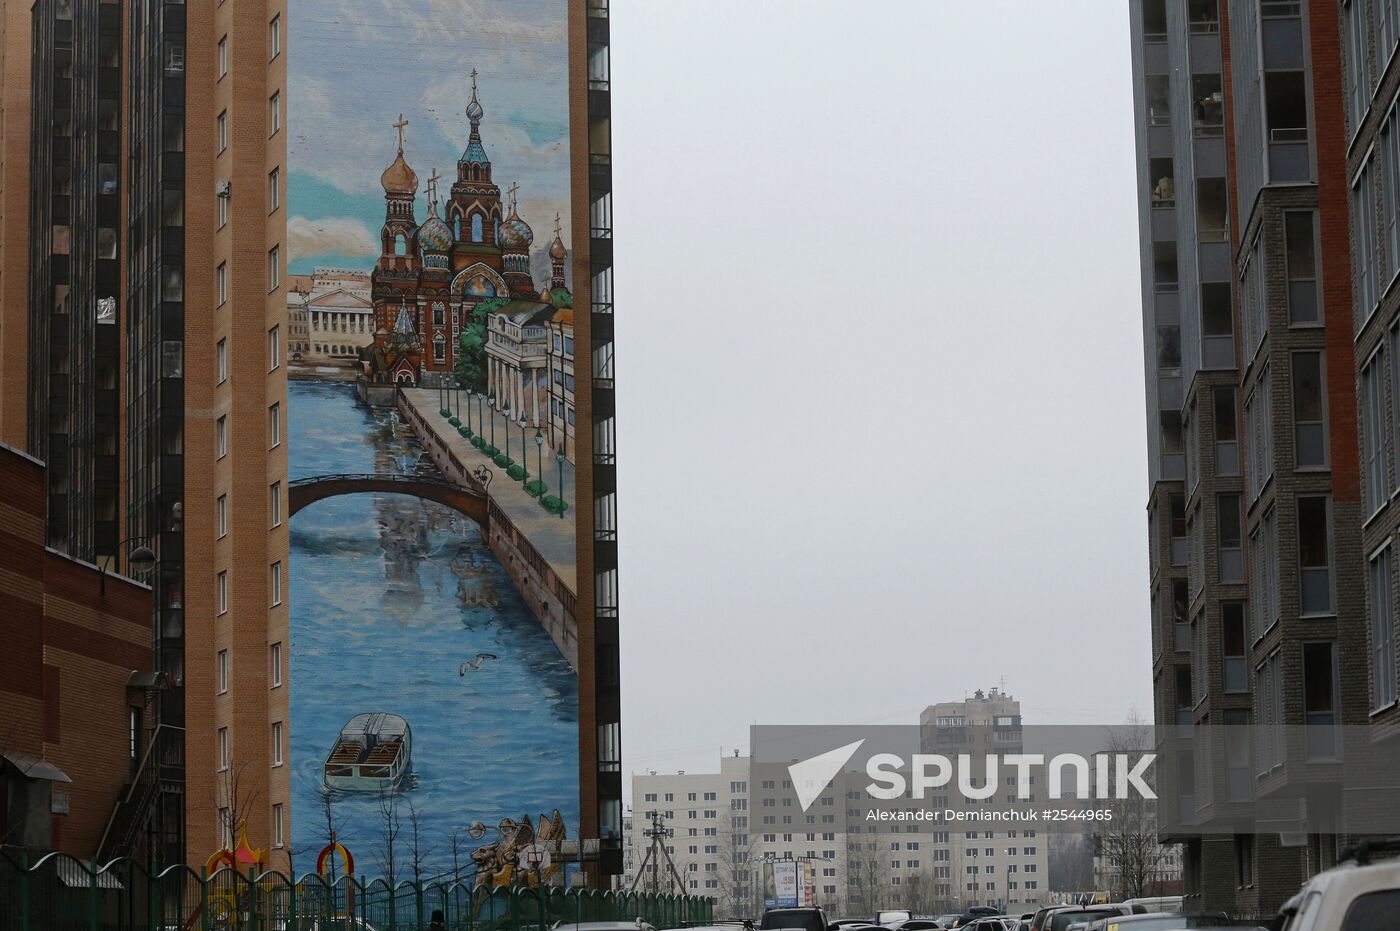 Paintings on walls of buildings in St. Petersburg